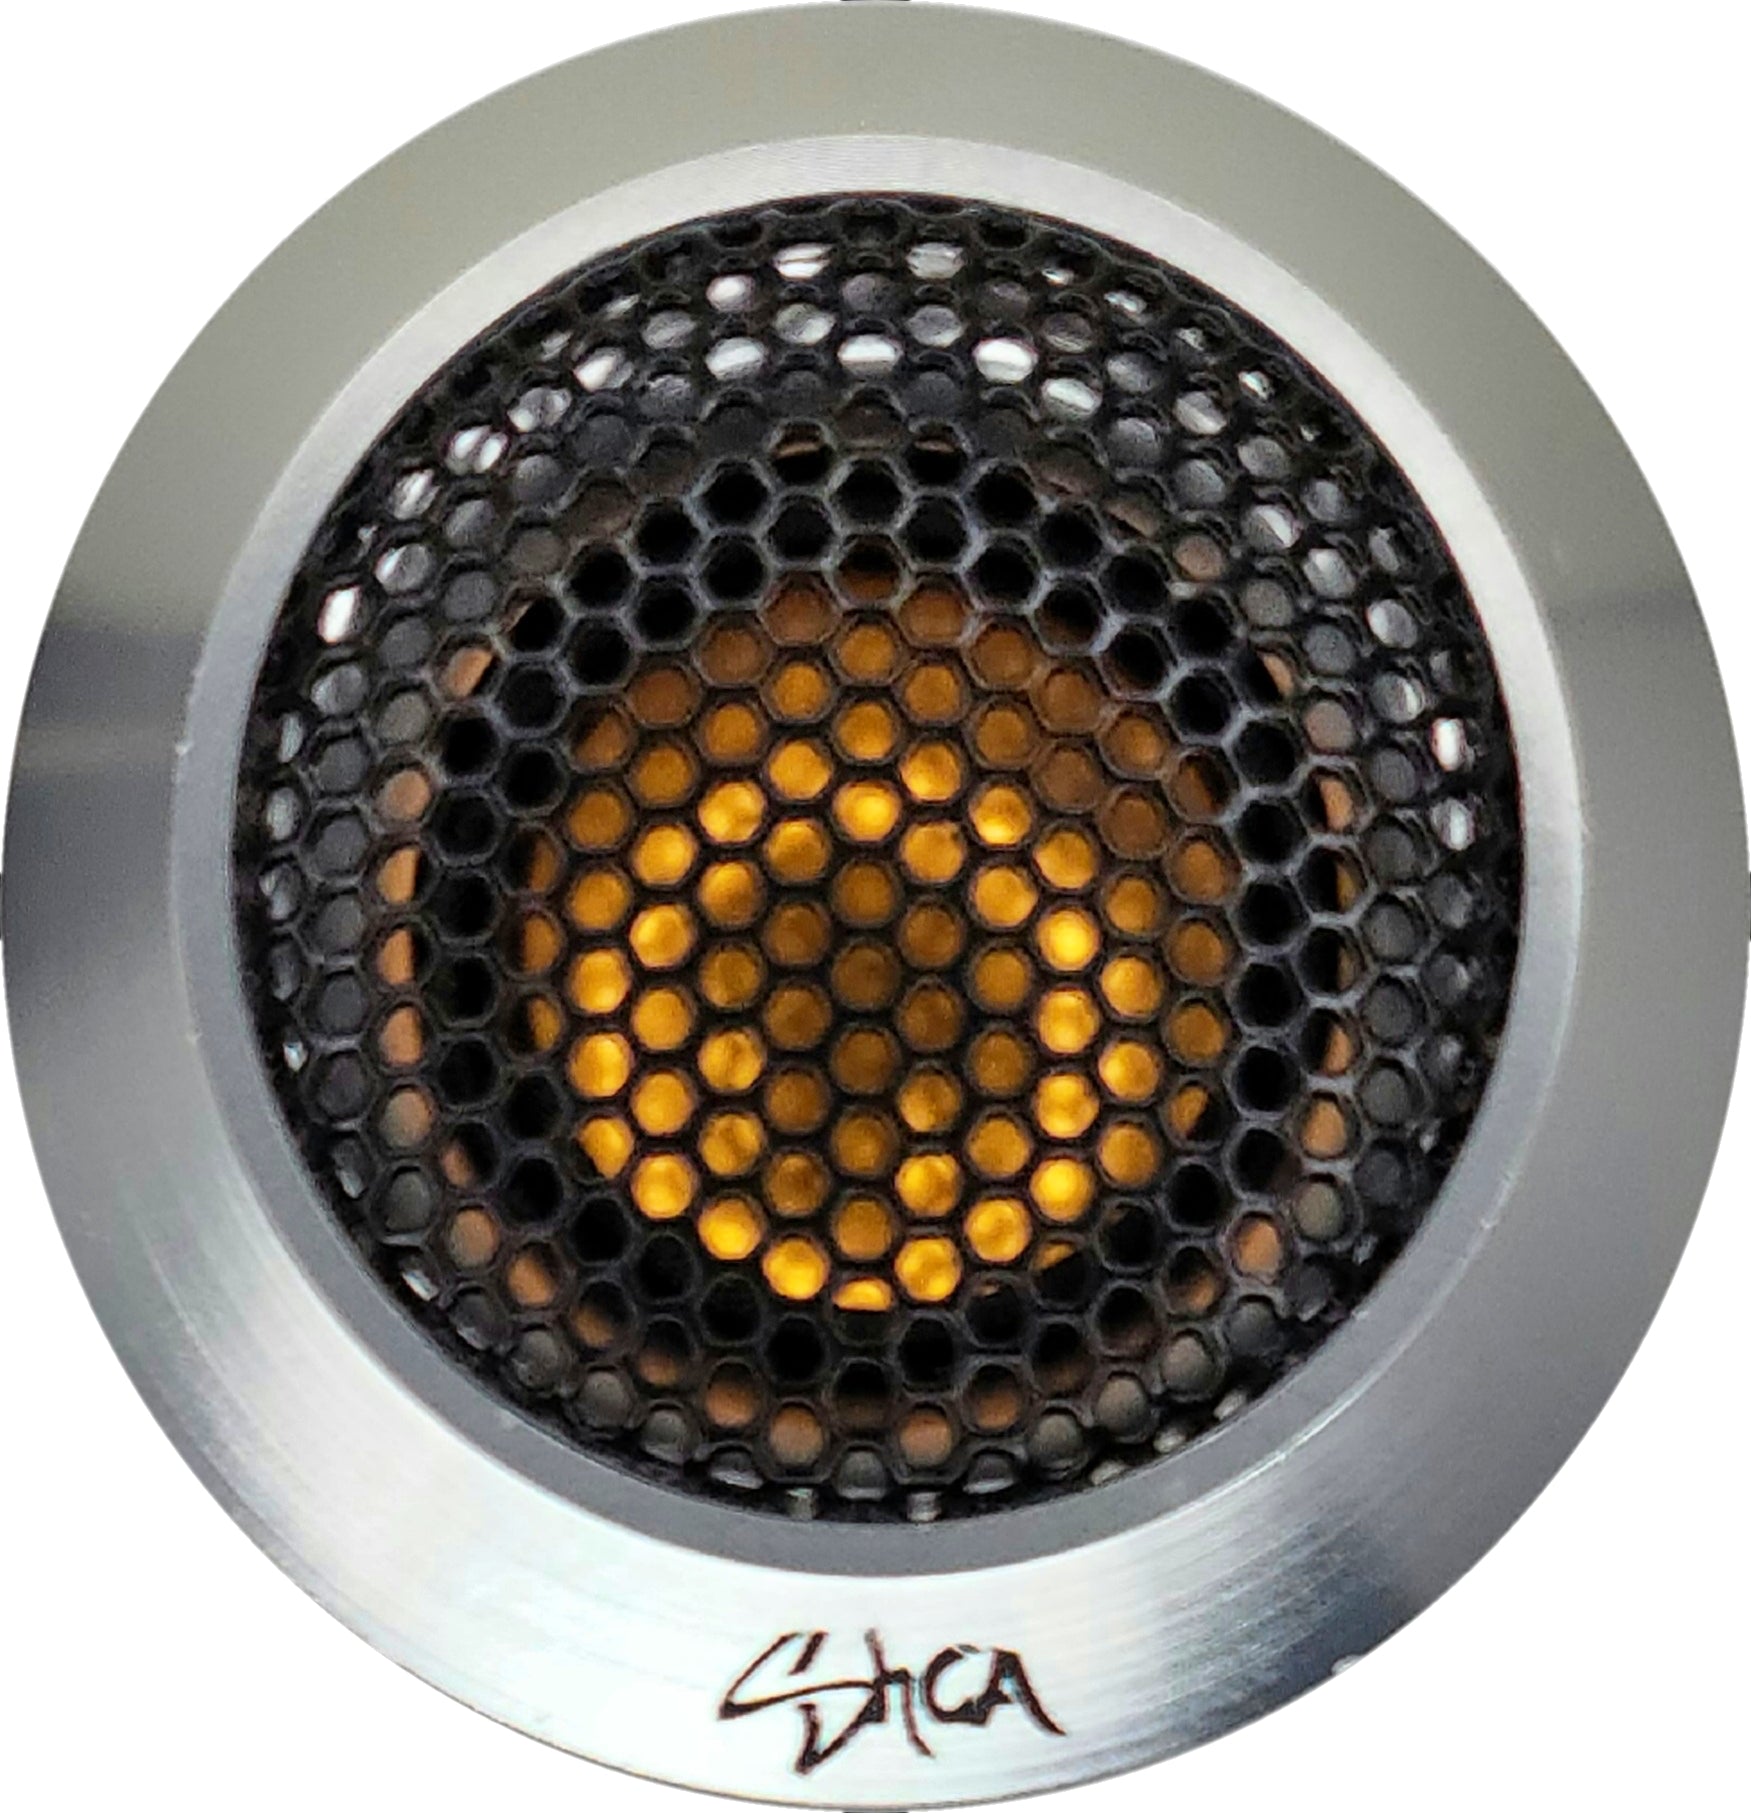 SHCA 65C2P Premium Neo 2 Way 6.5" Component Set 4 ohm (Neo Motors, Titanium Dome)